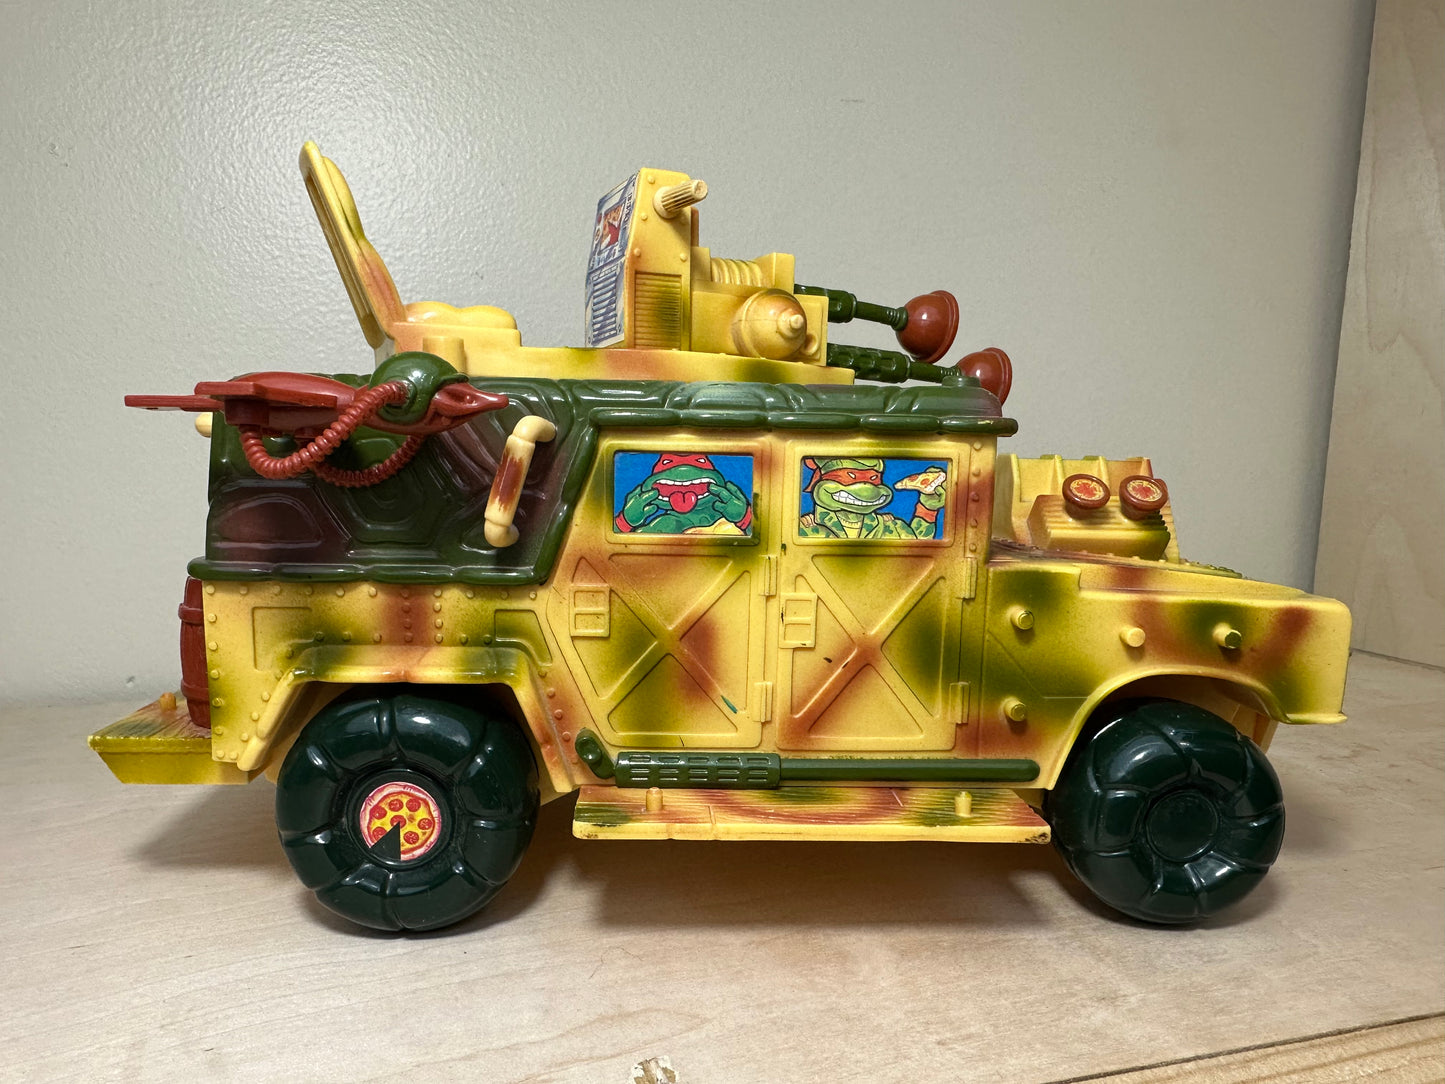 1992 TMNT Sand Cruiser Vehicle Incomplete Ninja Turtles Action Figure Toy